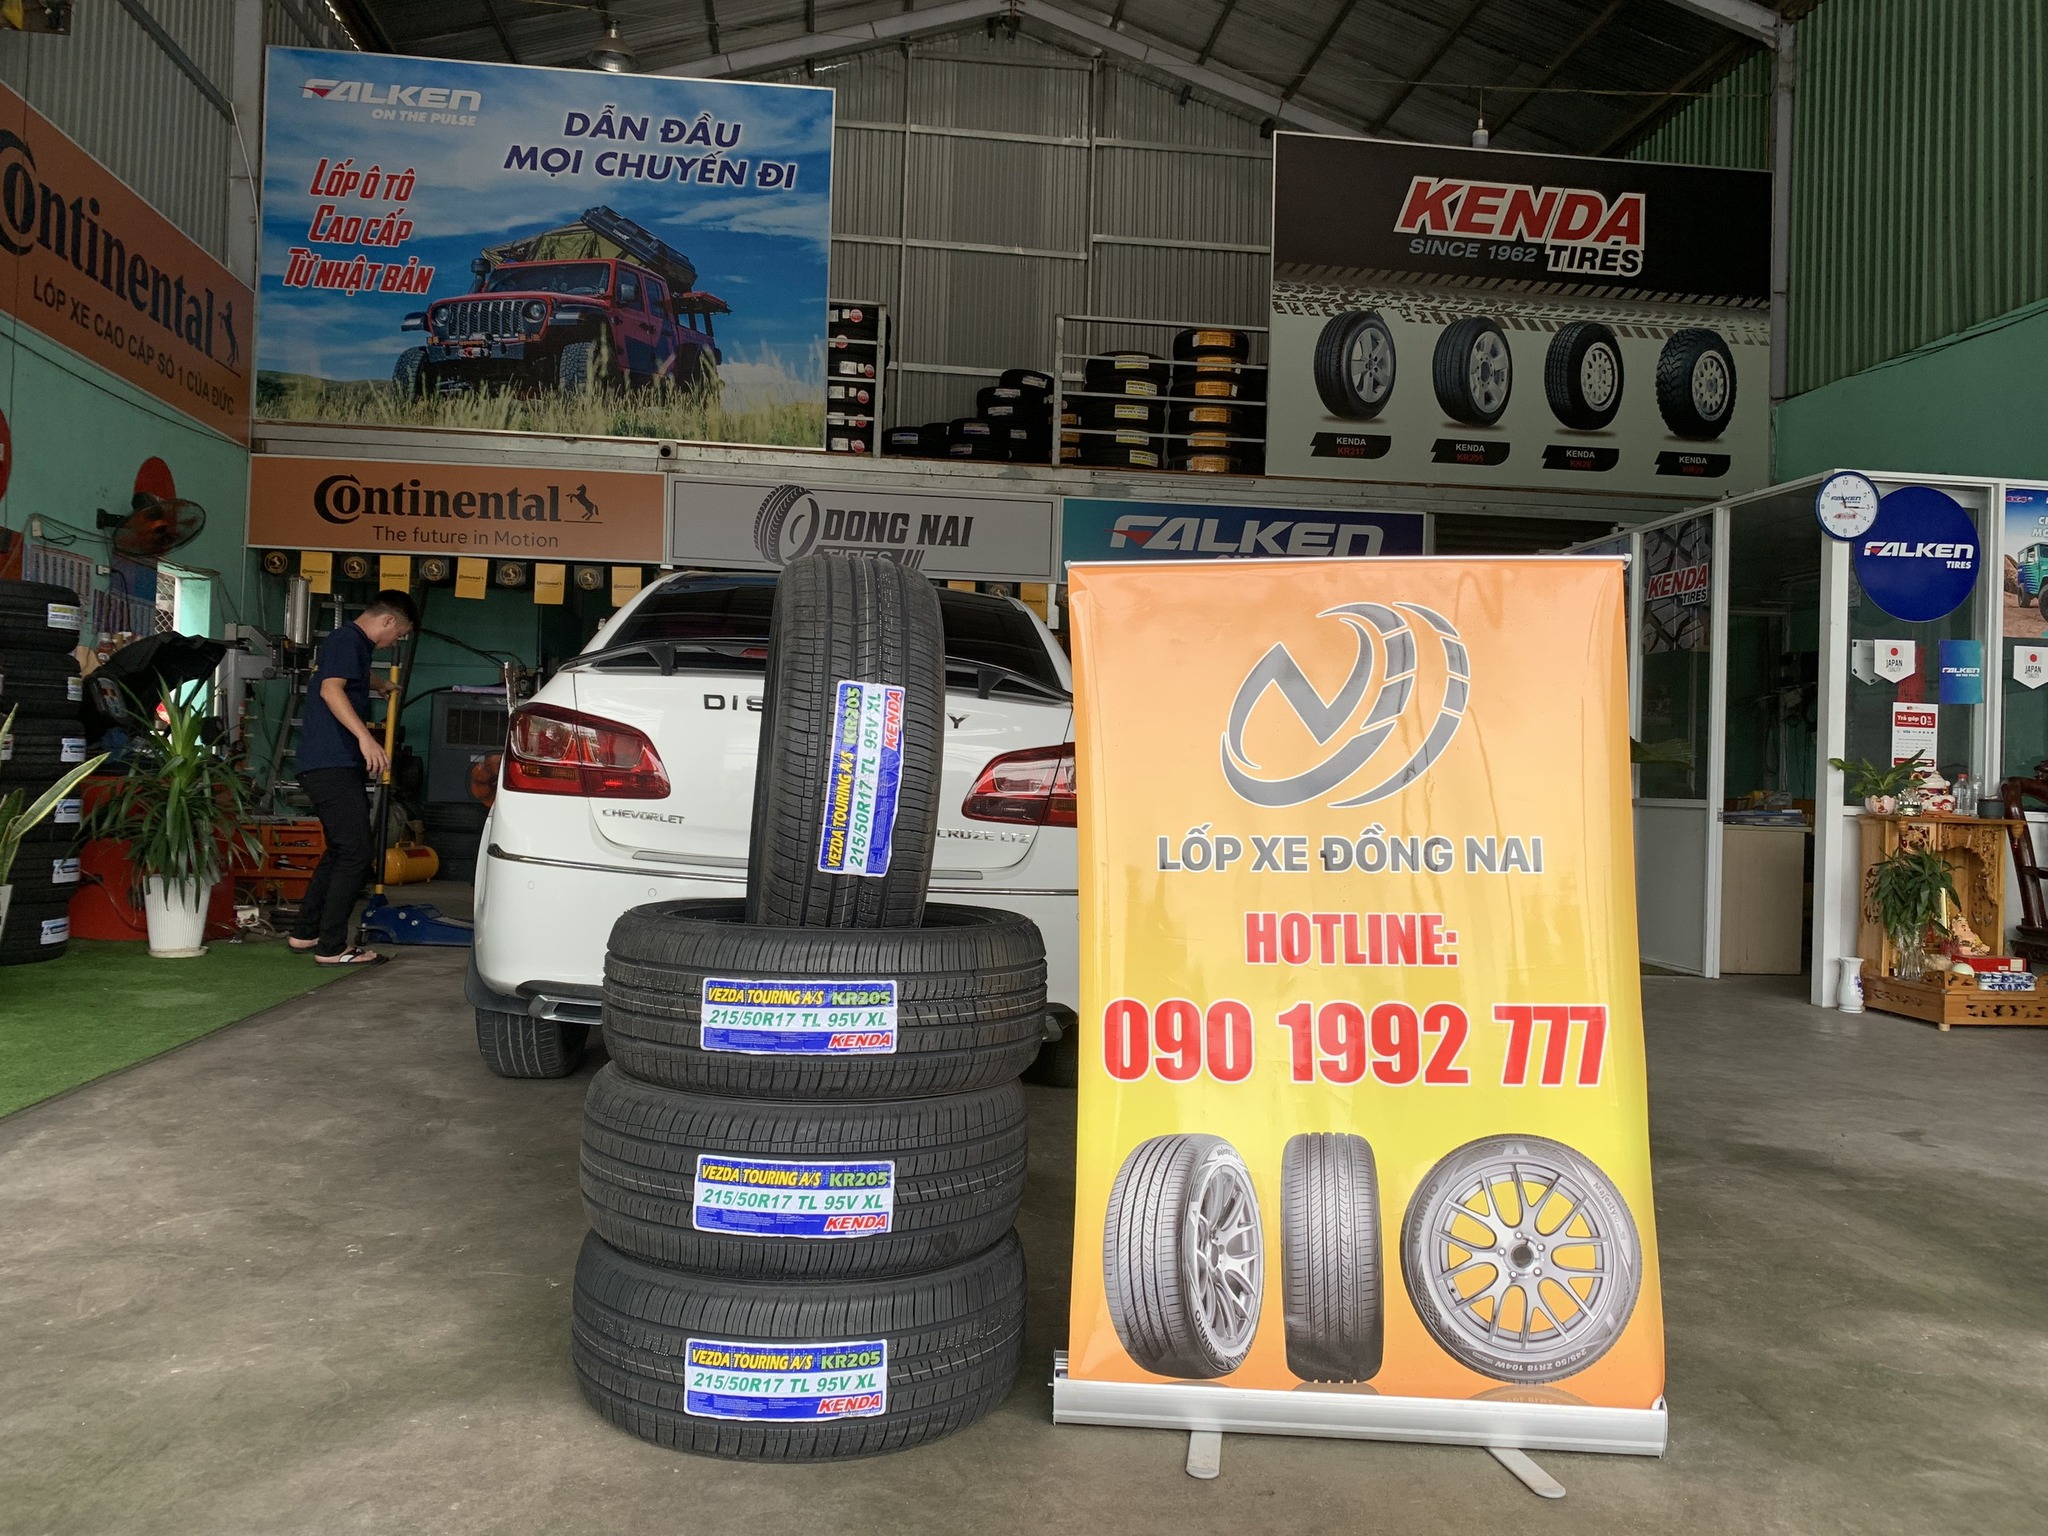 TƯ VẤN : Thay lốp xe Chevrolet Cruze ở Trảng Bom, Đồng Nai.